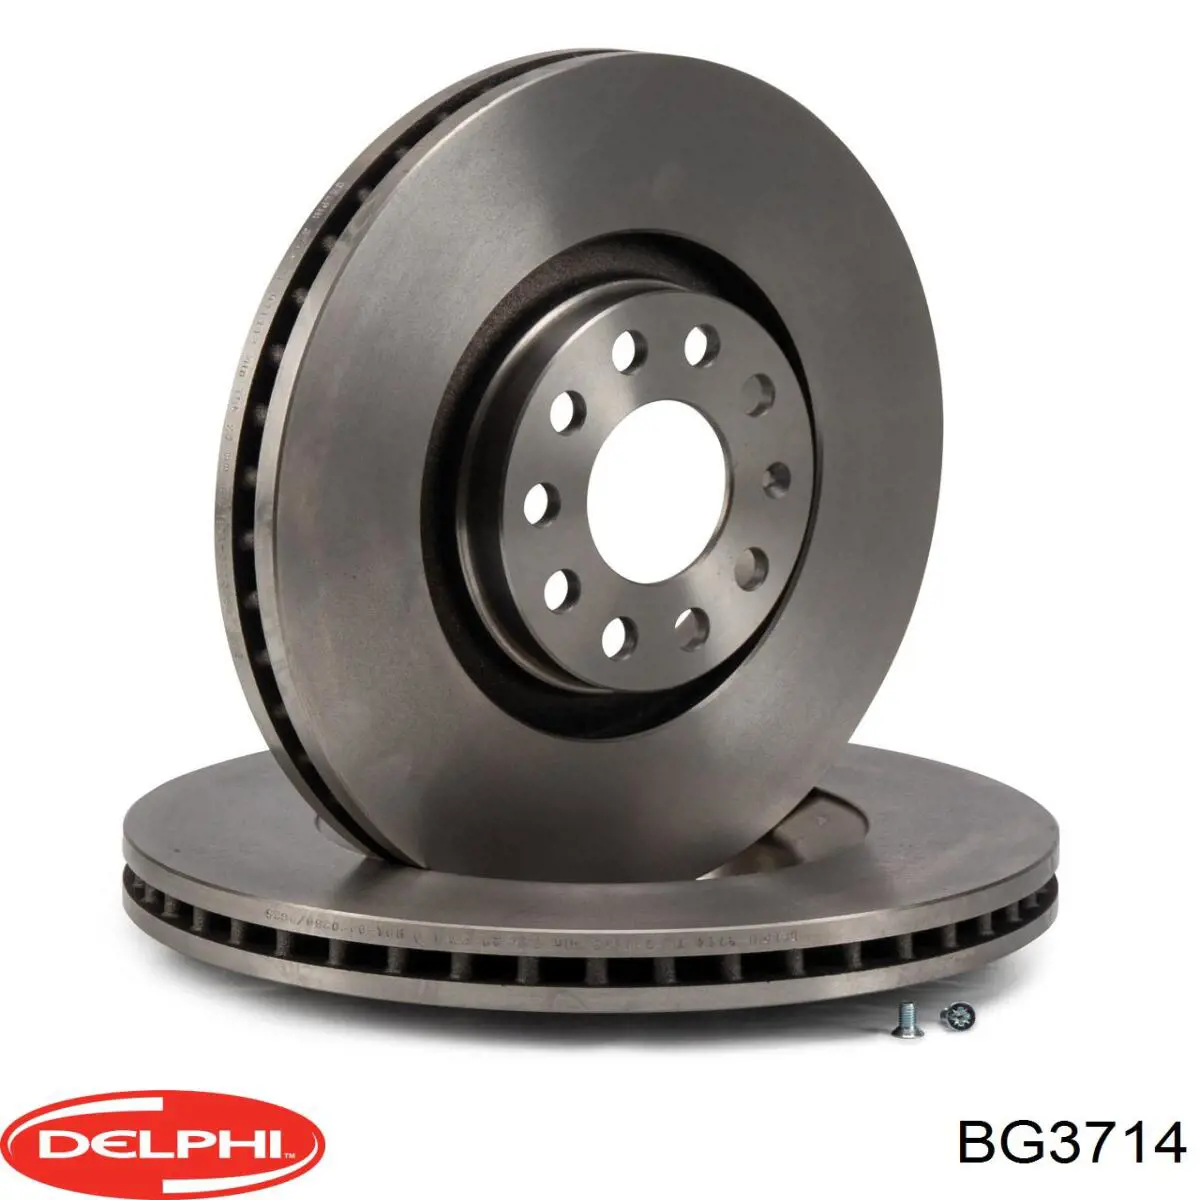 BG3714 Delphi disco do freio dianteiro